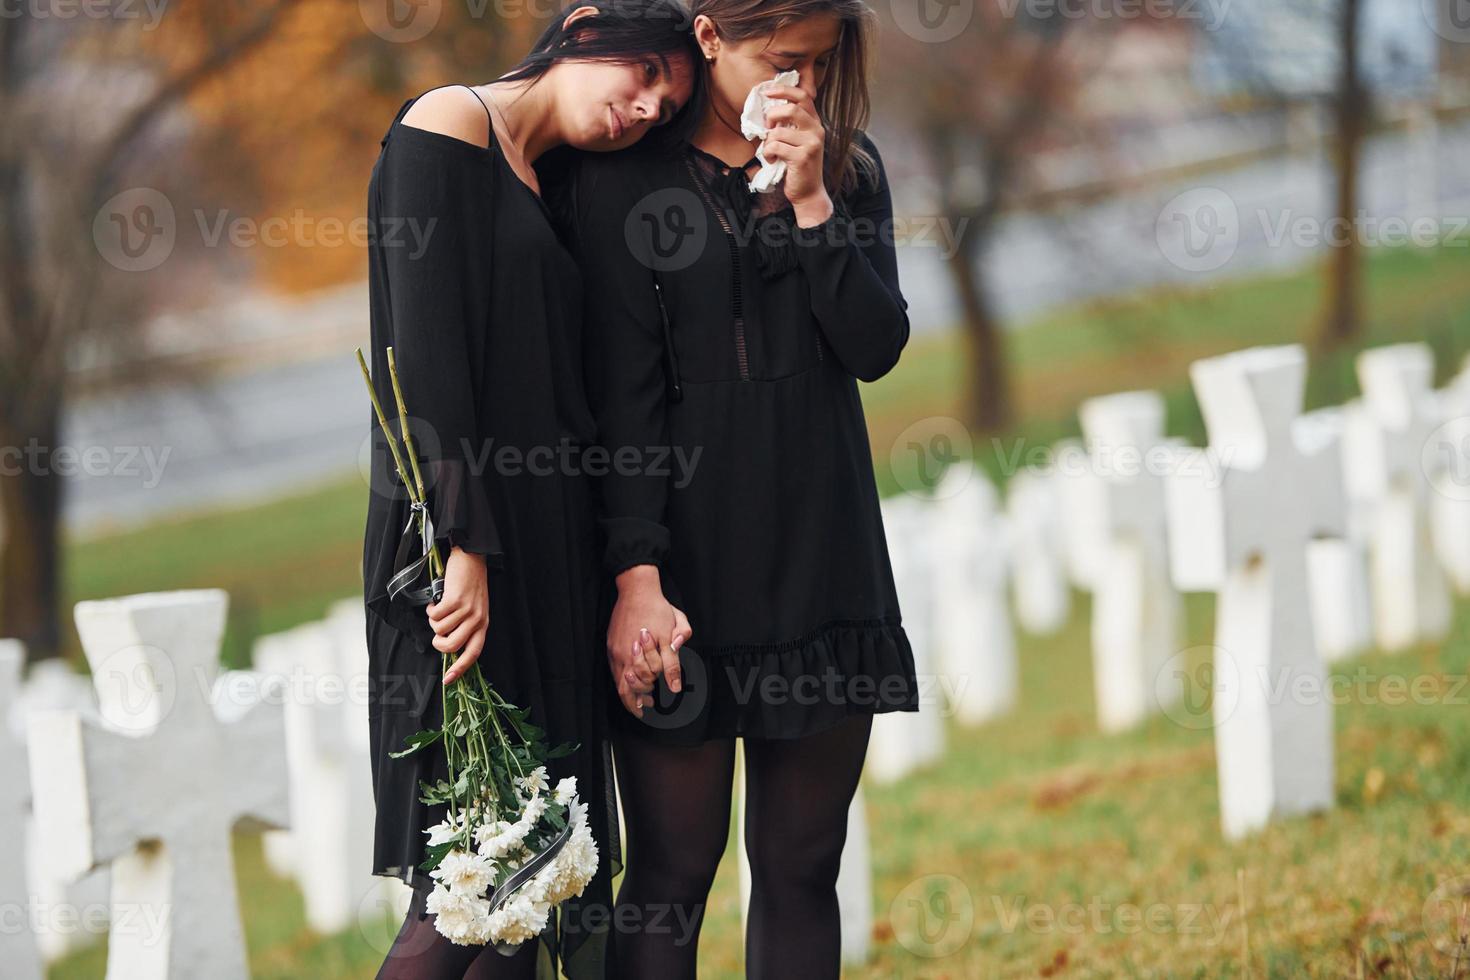 détient des fleurs. deux jeunes femmes en vêtements noirs visitant un cimetière avec de nombreuses croix blanches. conception des funérailles et de la mort photo